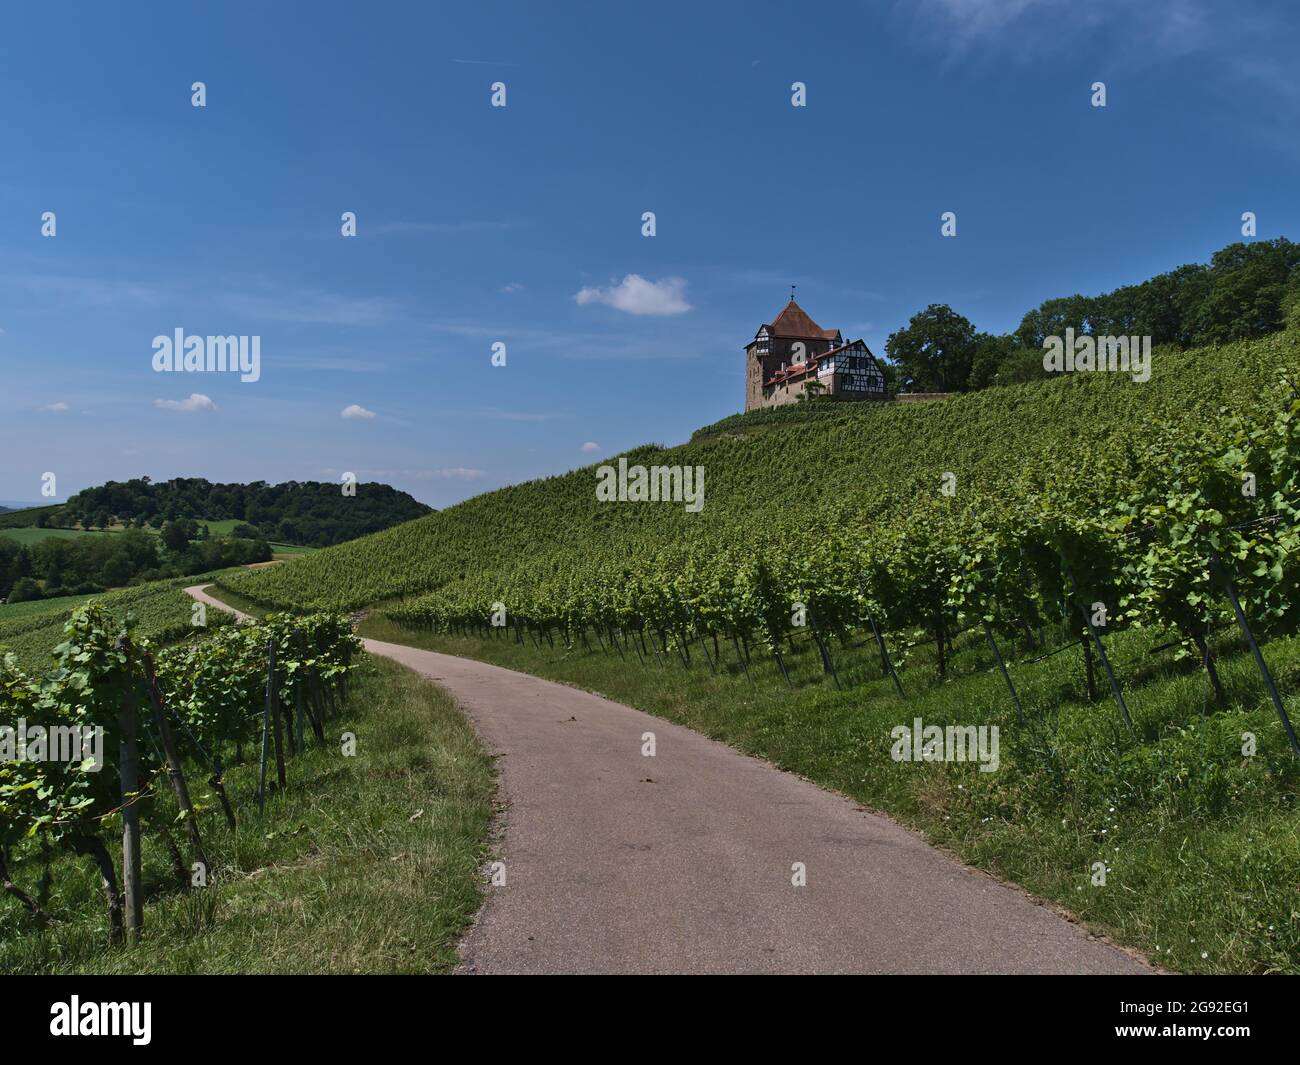 Una prospettiva ridotta della strada agricola che conduce attraverso i vigneti con foglie verdi sotto lo storico castello medievale Burg Wildeck in Germania. Foto Stock